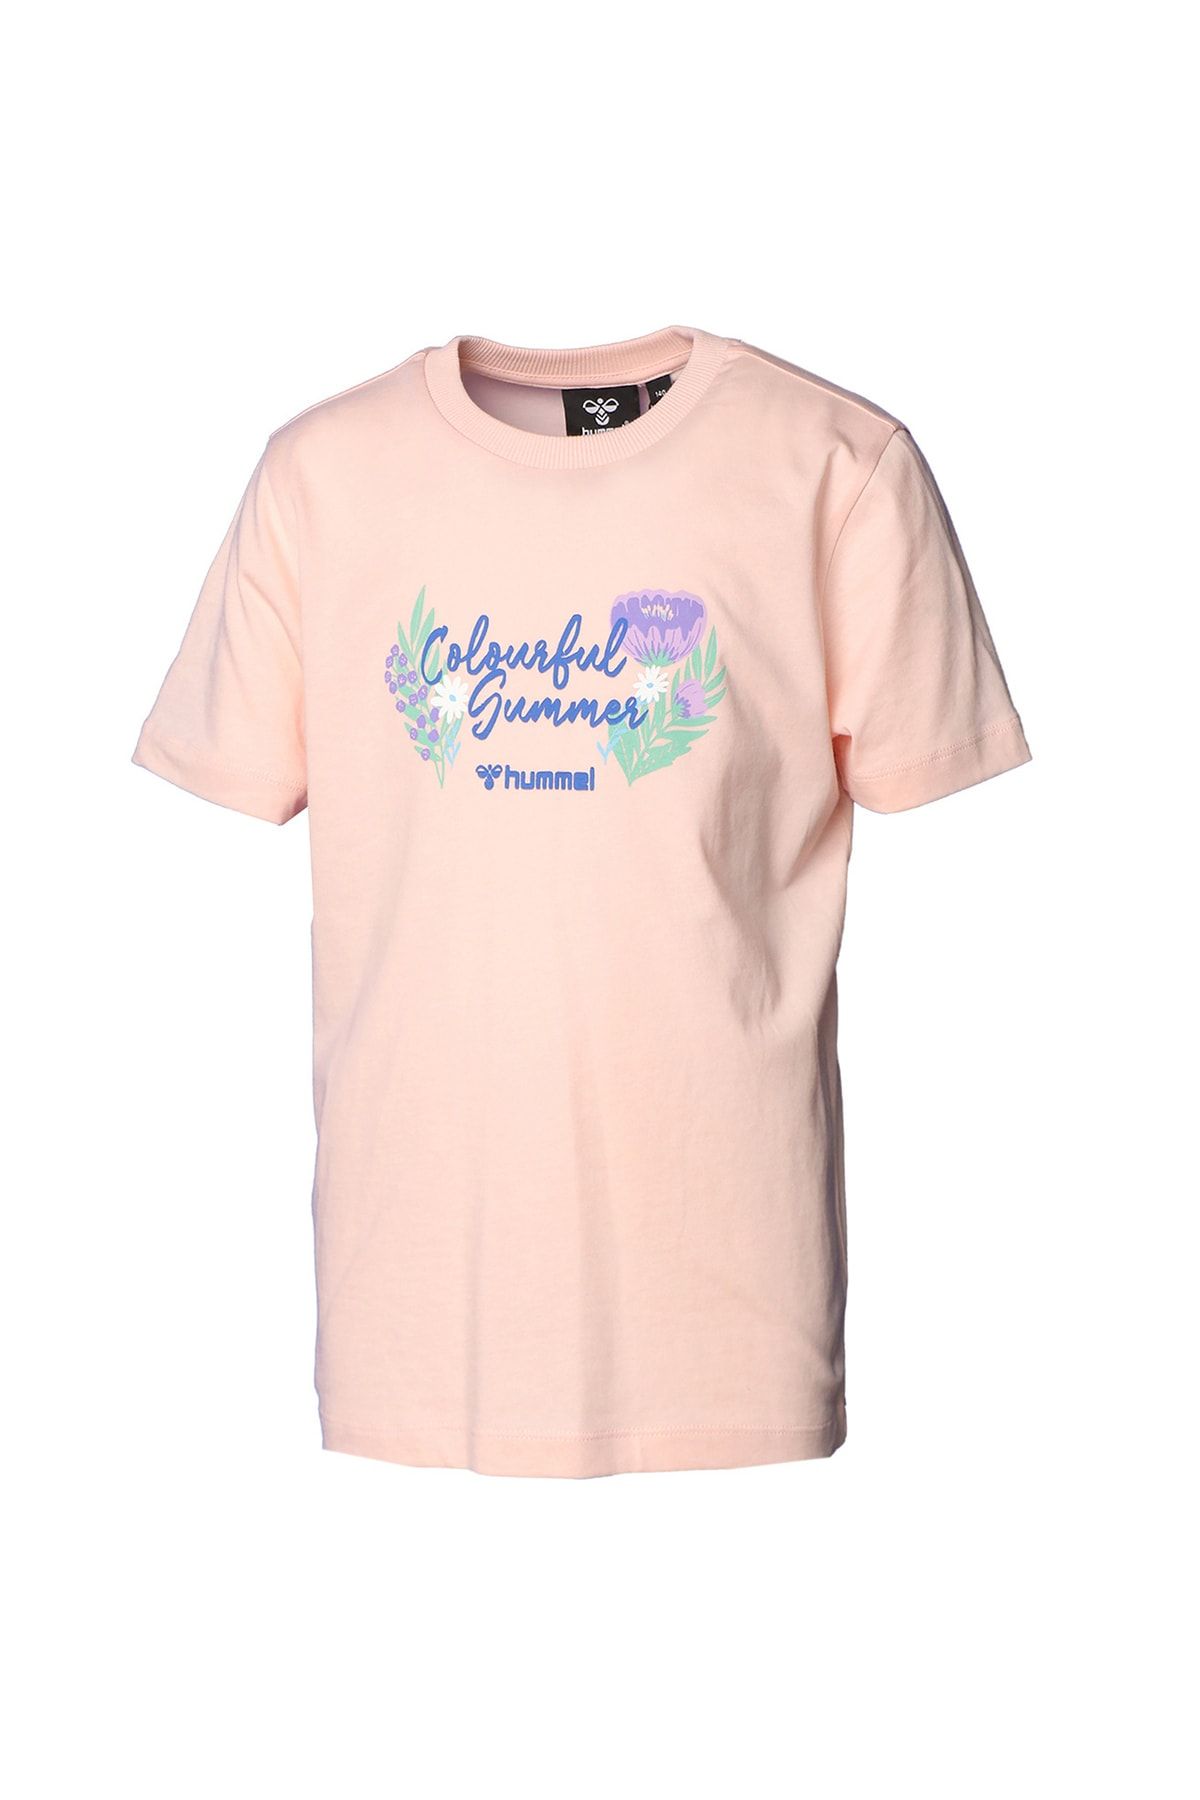 hummel Baskılı Turuncu Kız Çocuk T-shirt 911632-3601 Hmlakemı T-shırt S/s